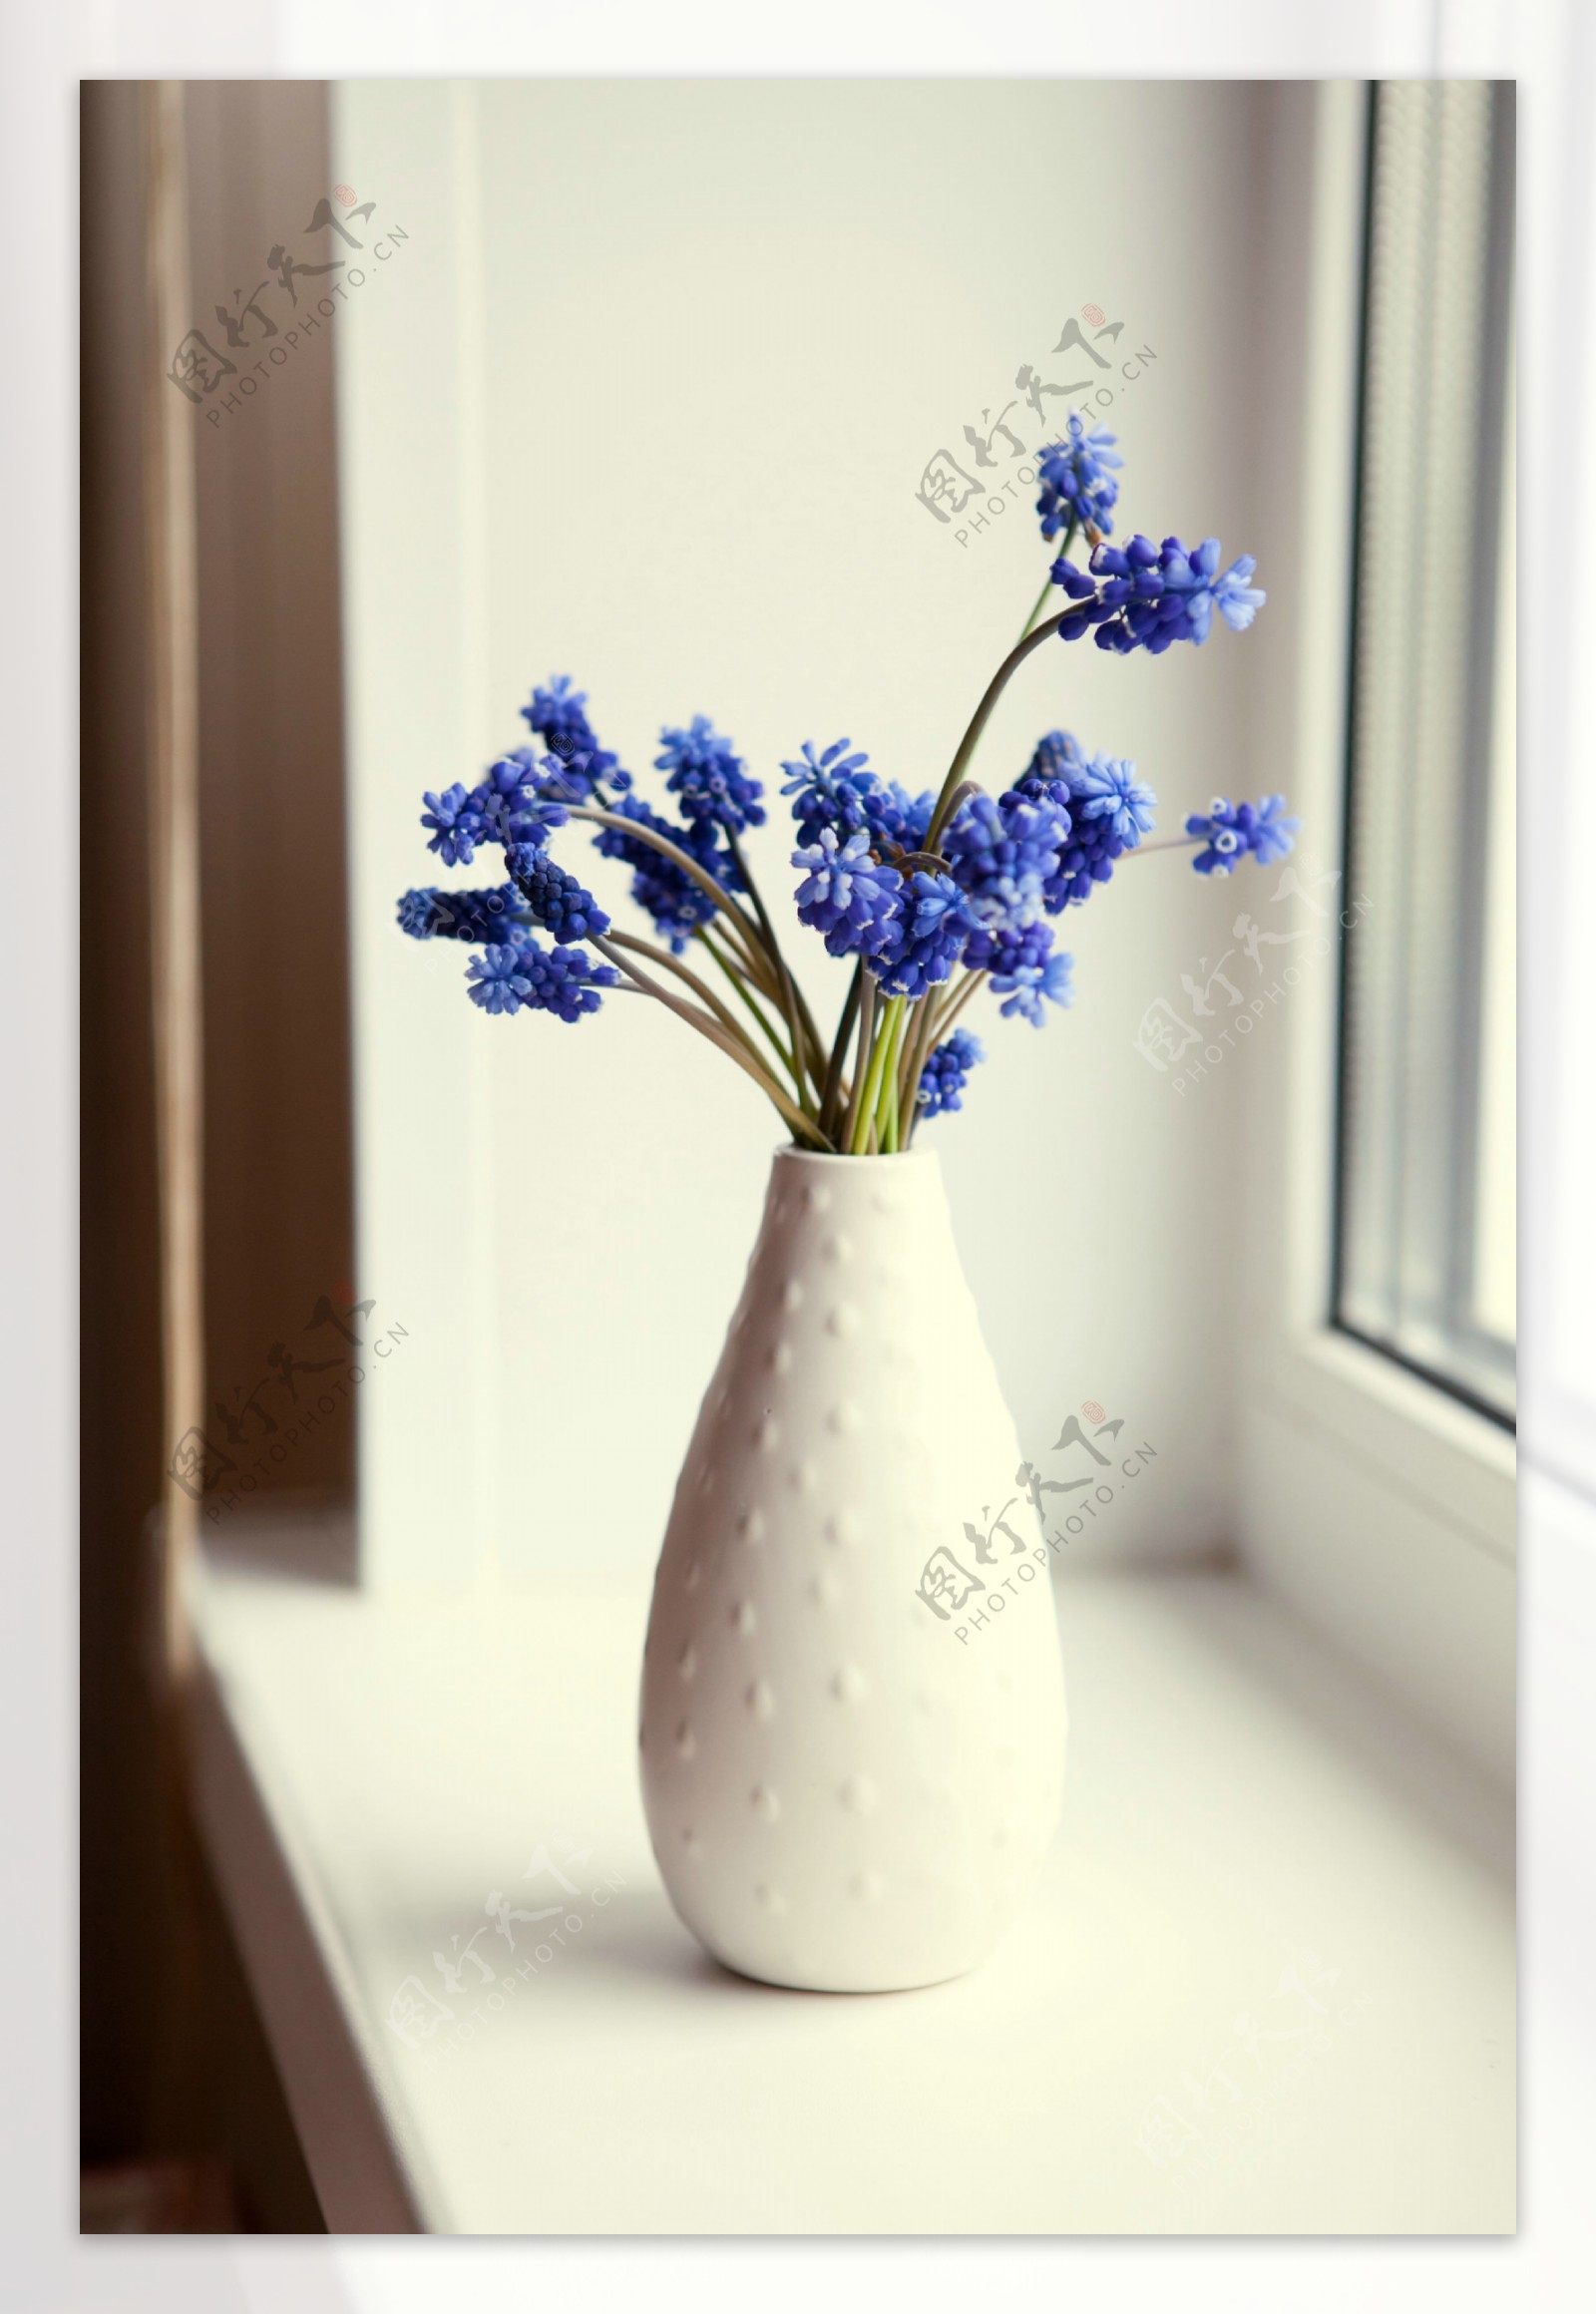 白色花瓶里的蓝色鲜花图片